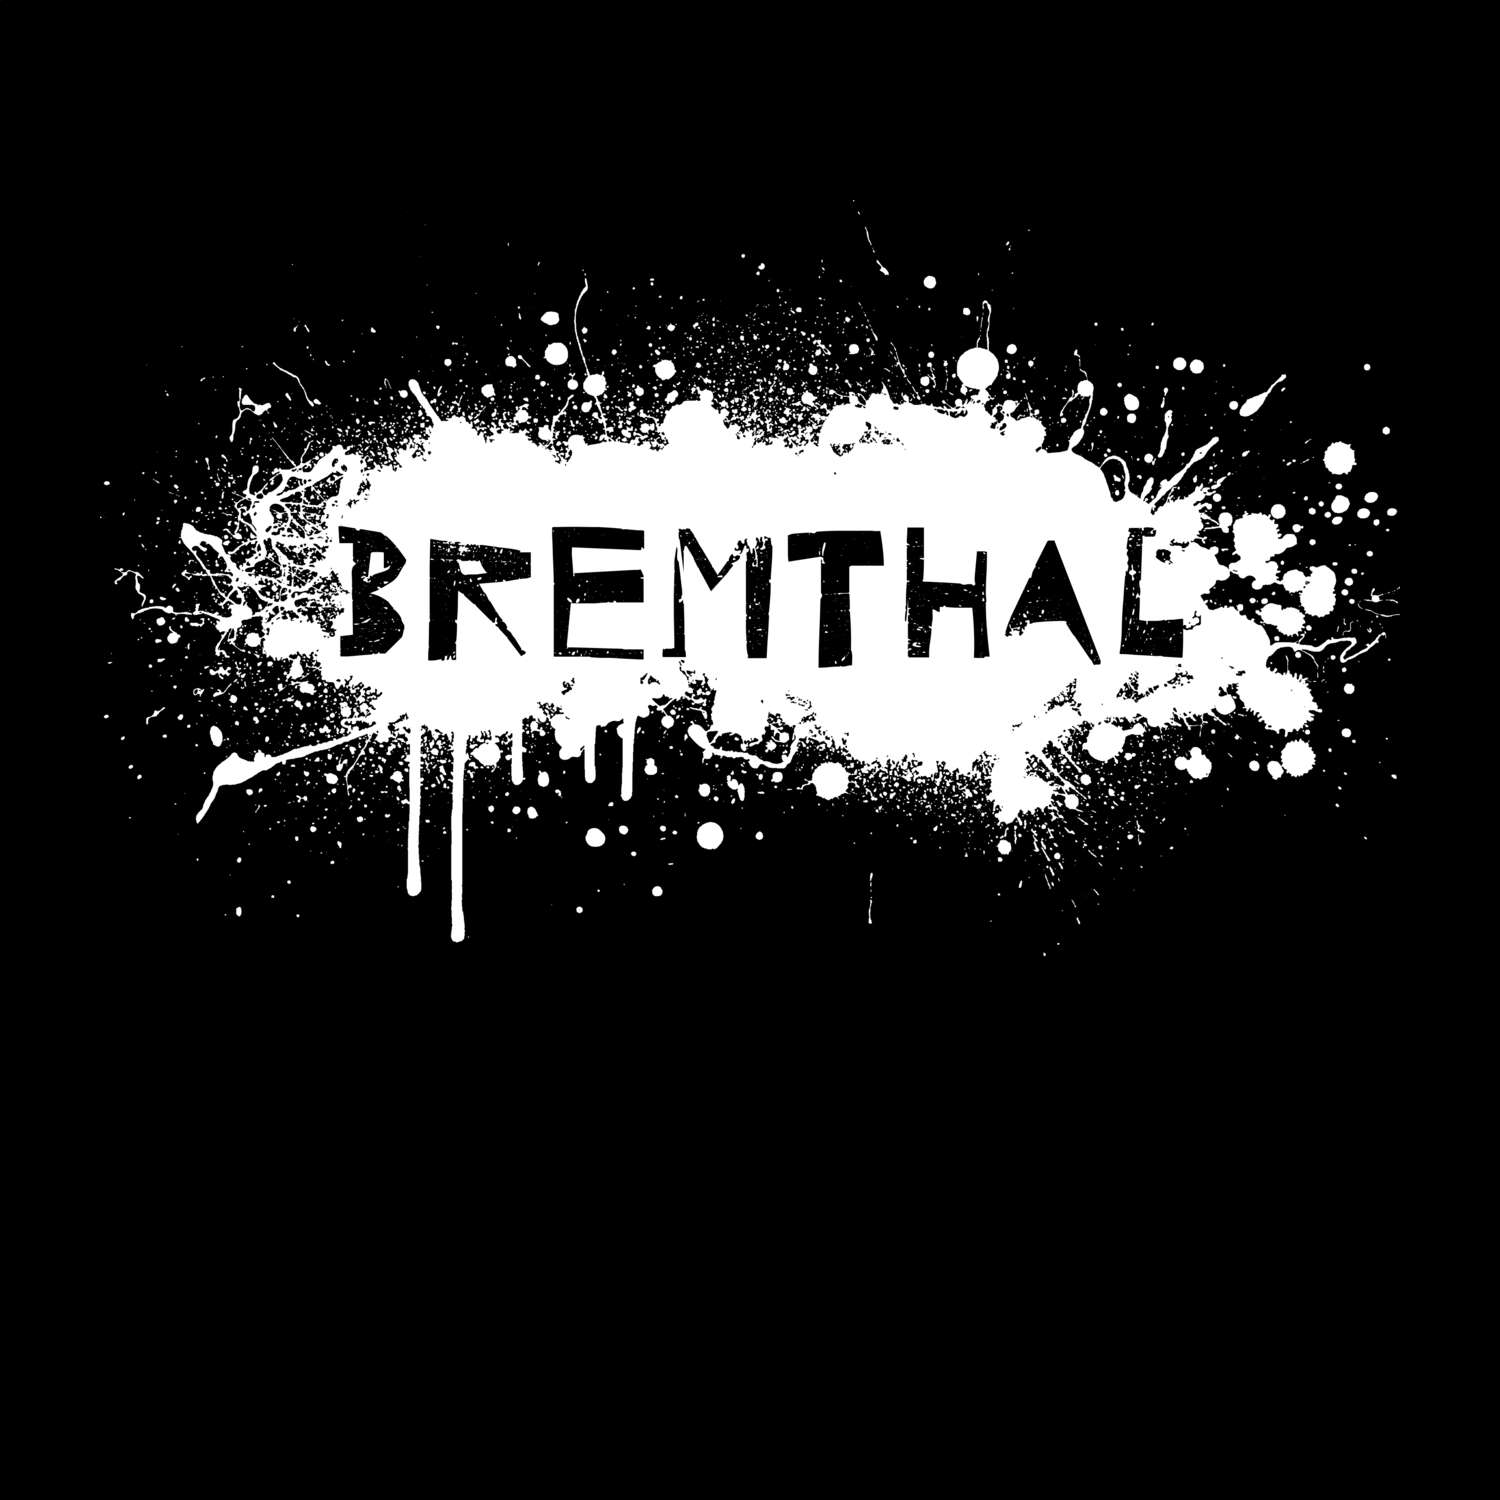 Bremthal T-Shirt »Paint Splash Punk«